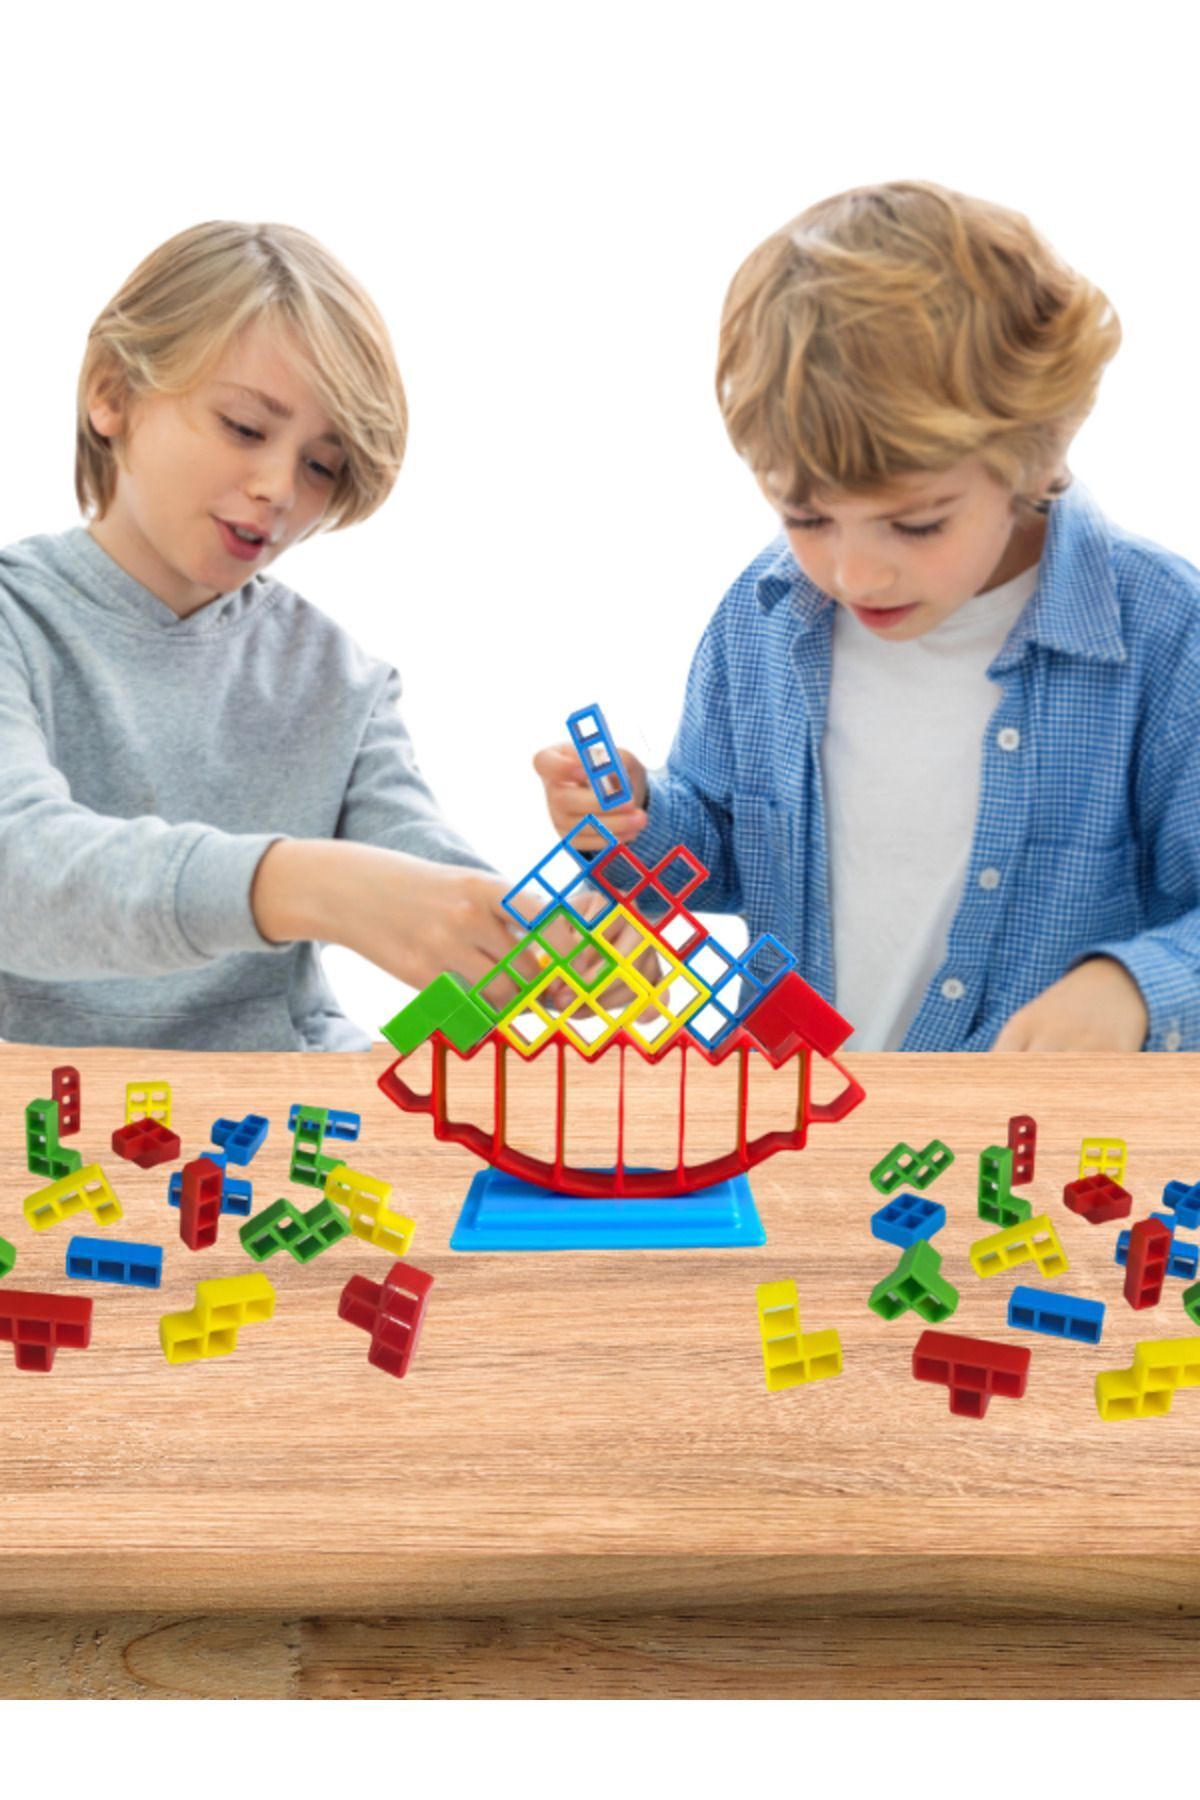 WOODROFFE Tetra Kule Denge Oyuncağı Eğitici Kutu Oyuncak Denge Tetris Kule Tetra Tower Eğitici Zeka Oyuncağı